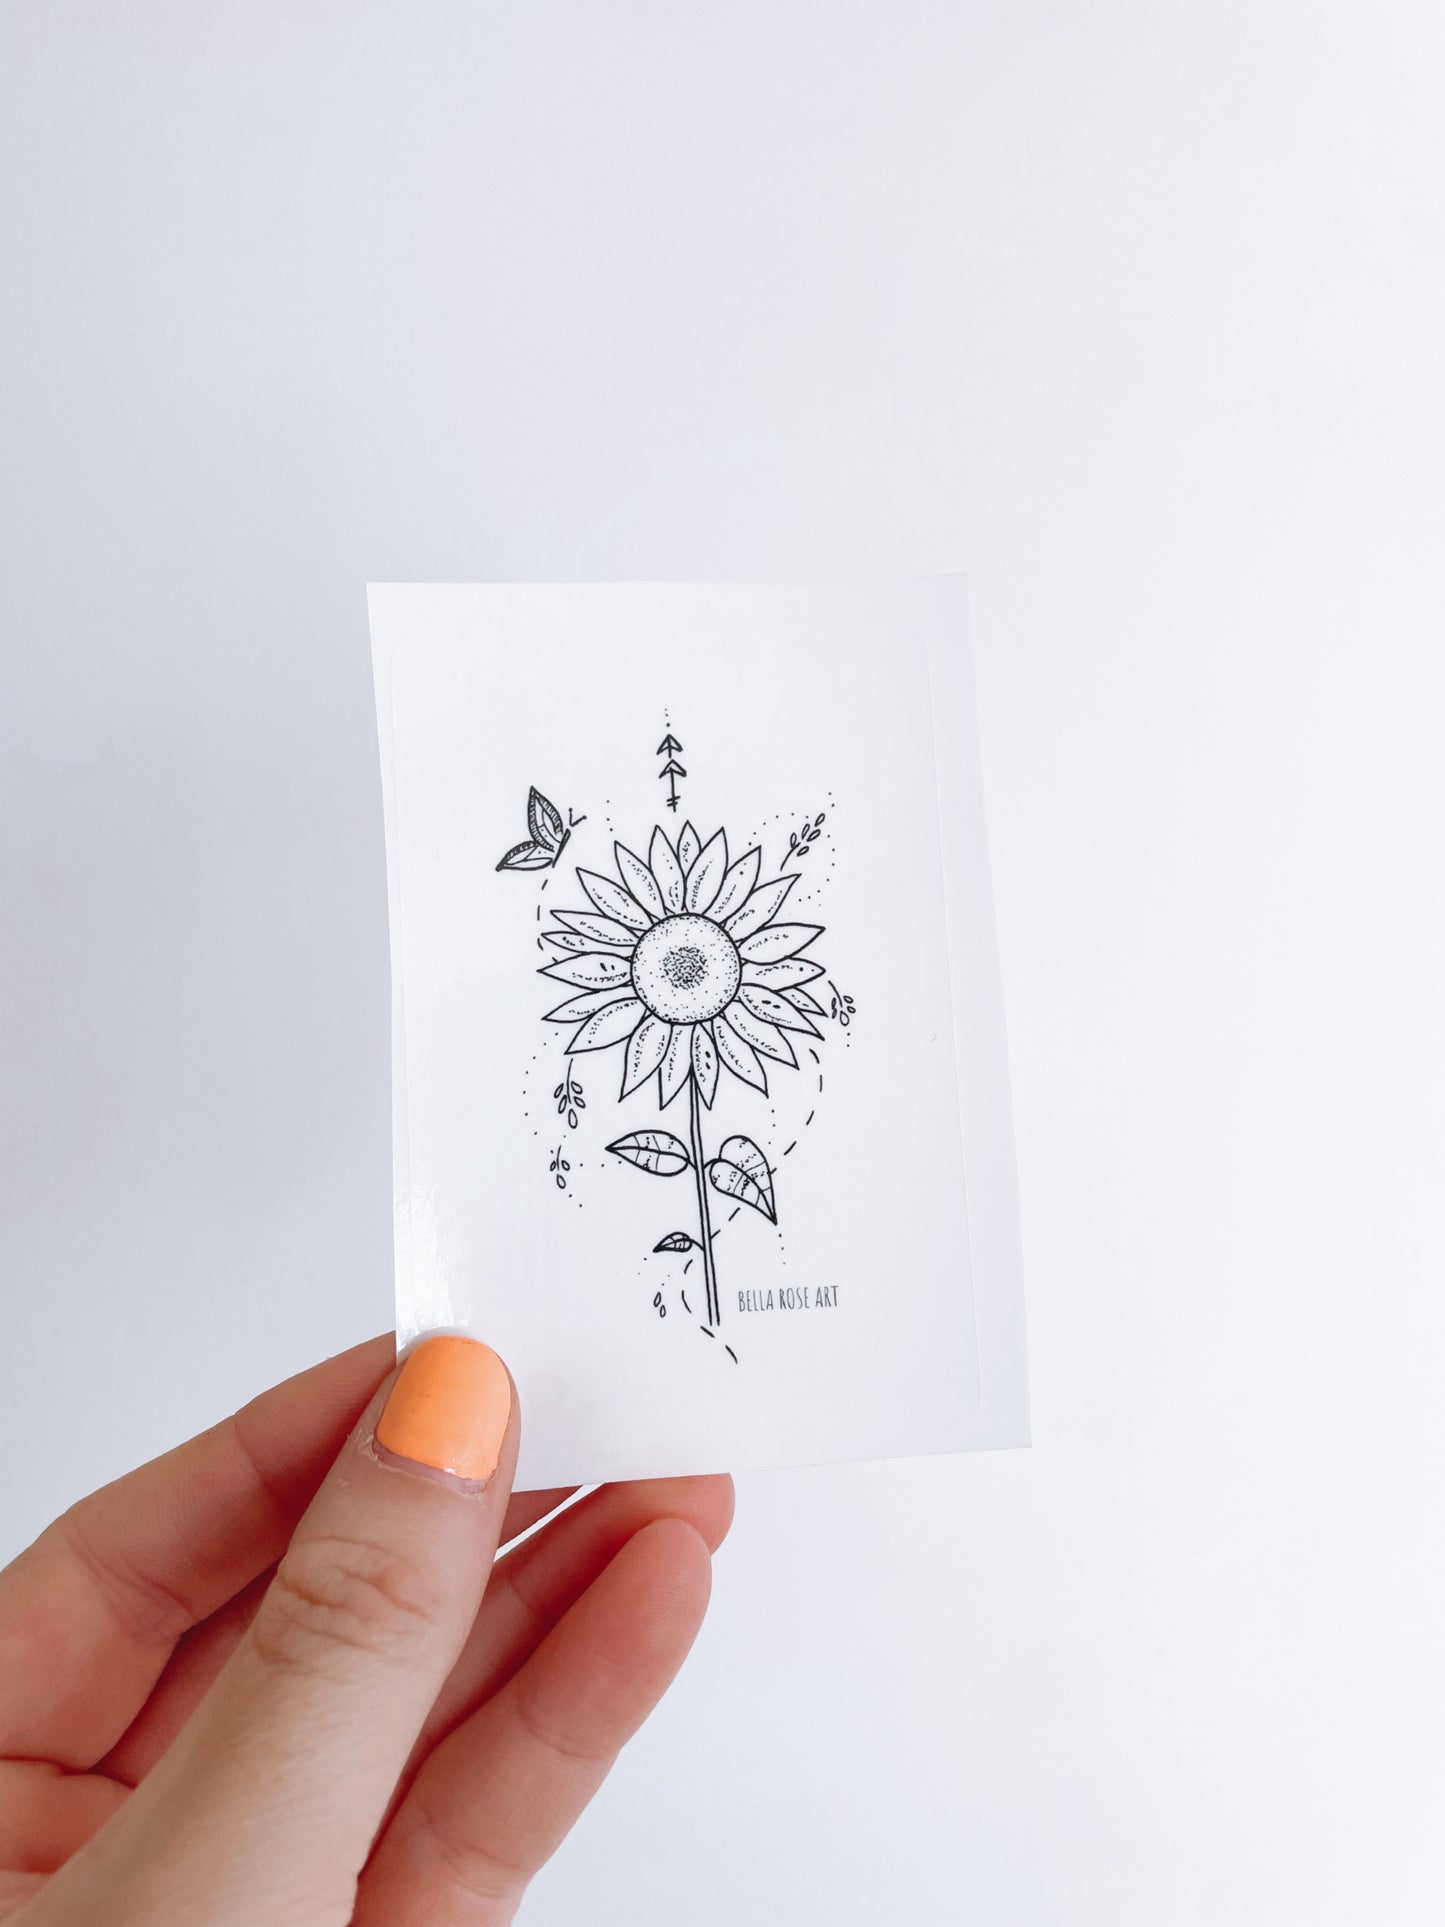 Sunflower sticker